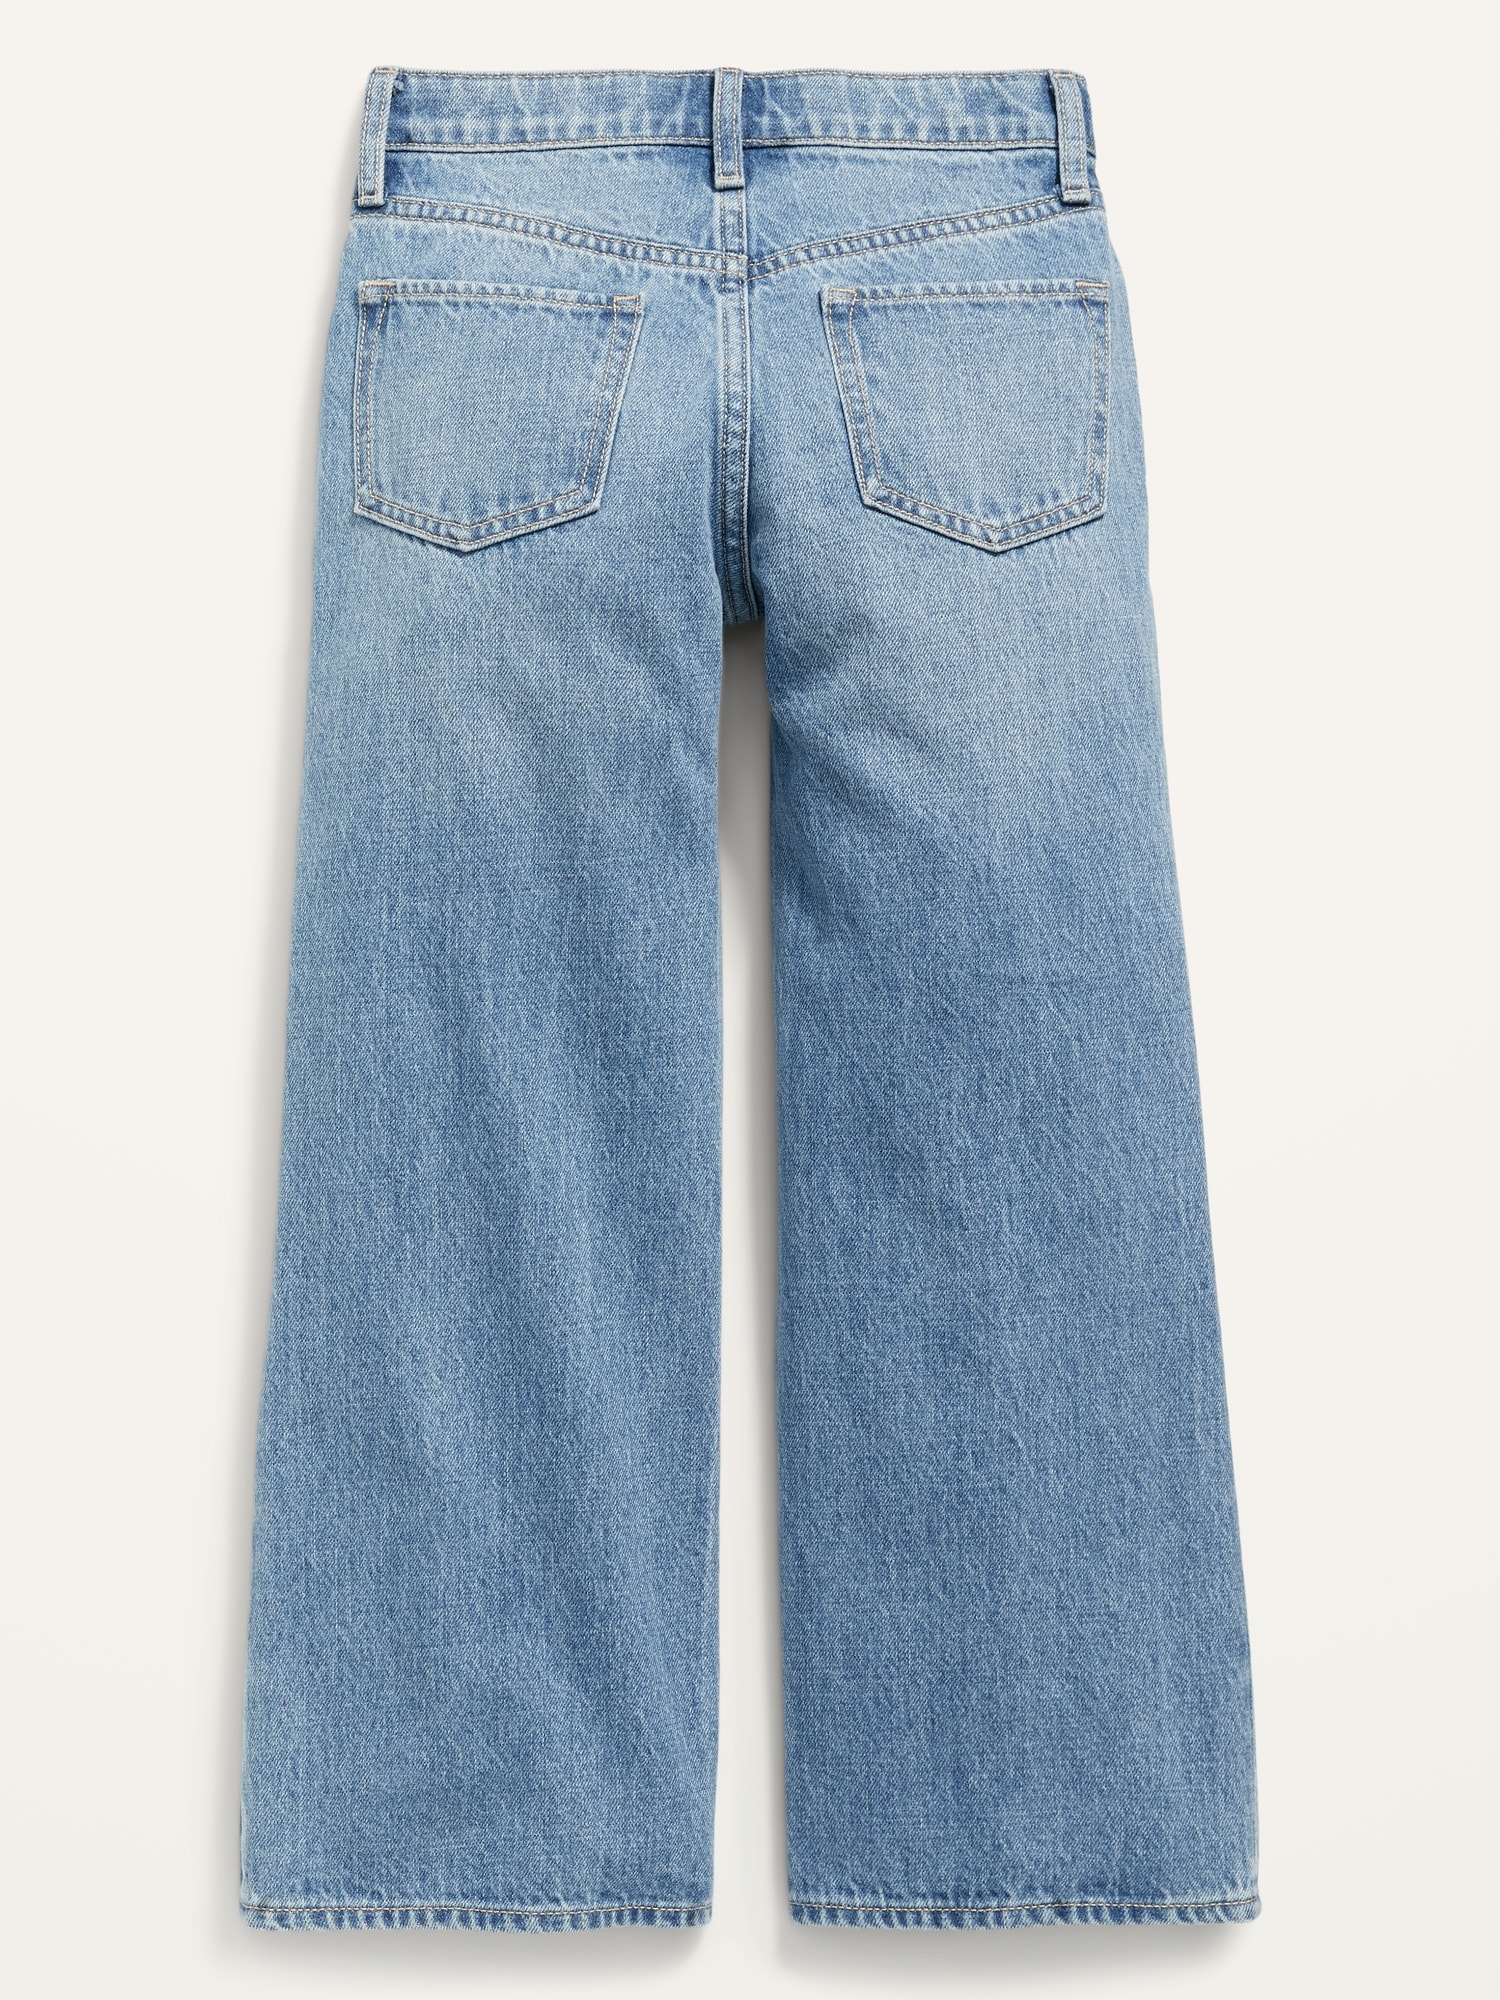 KJIUQ Wide Leg Ripped Jeans for Women High Waist Baggy Distressed Denim  Pants Casual Y2K Trendy Streetwear Trousers(Blue,S)